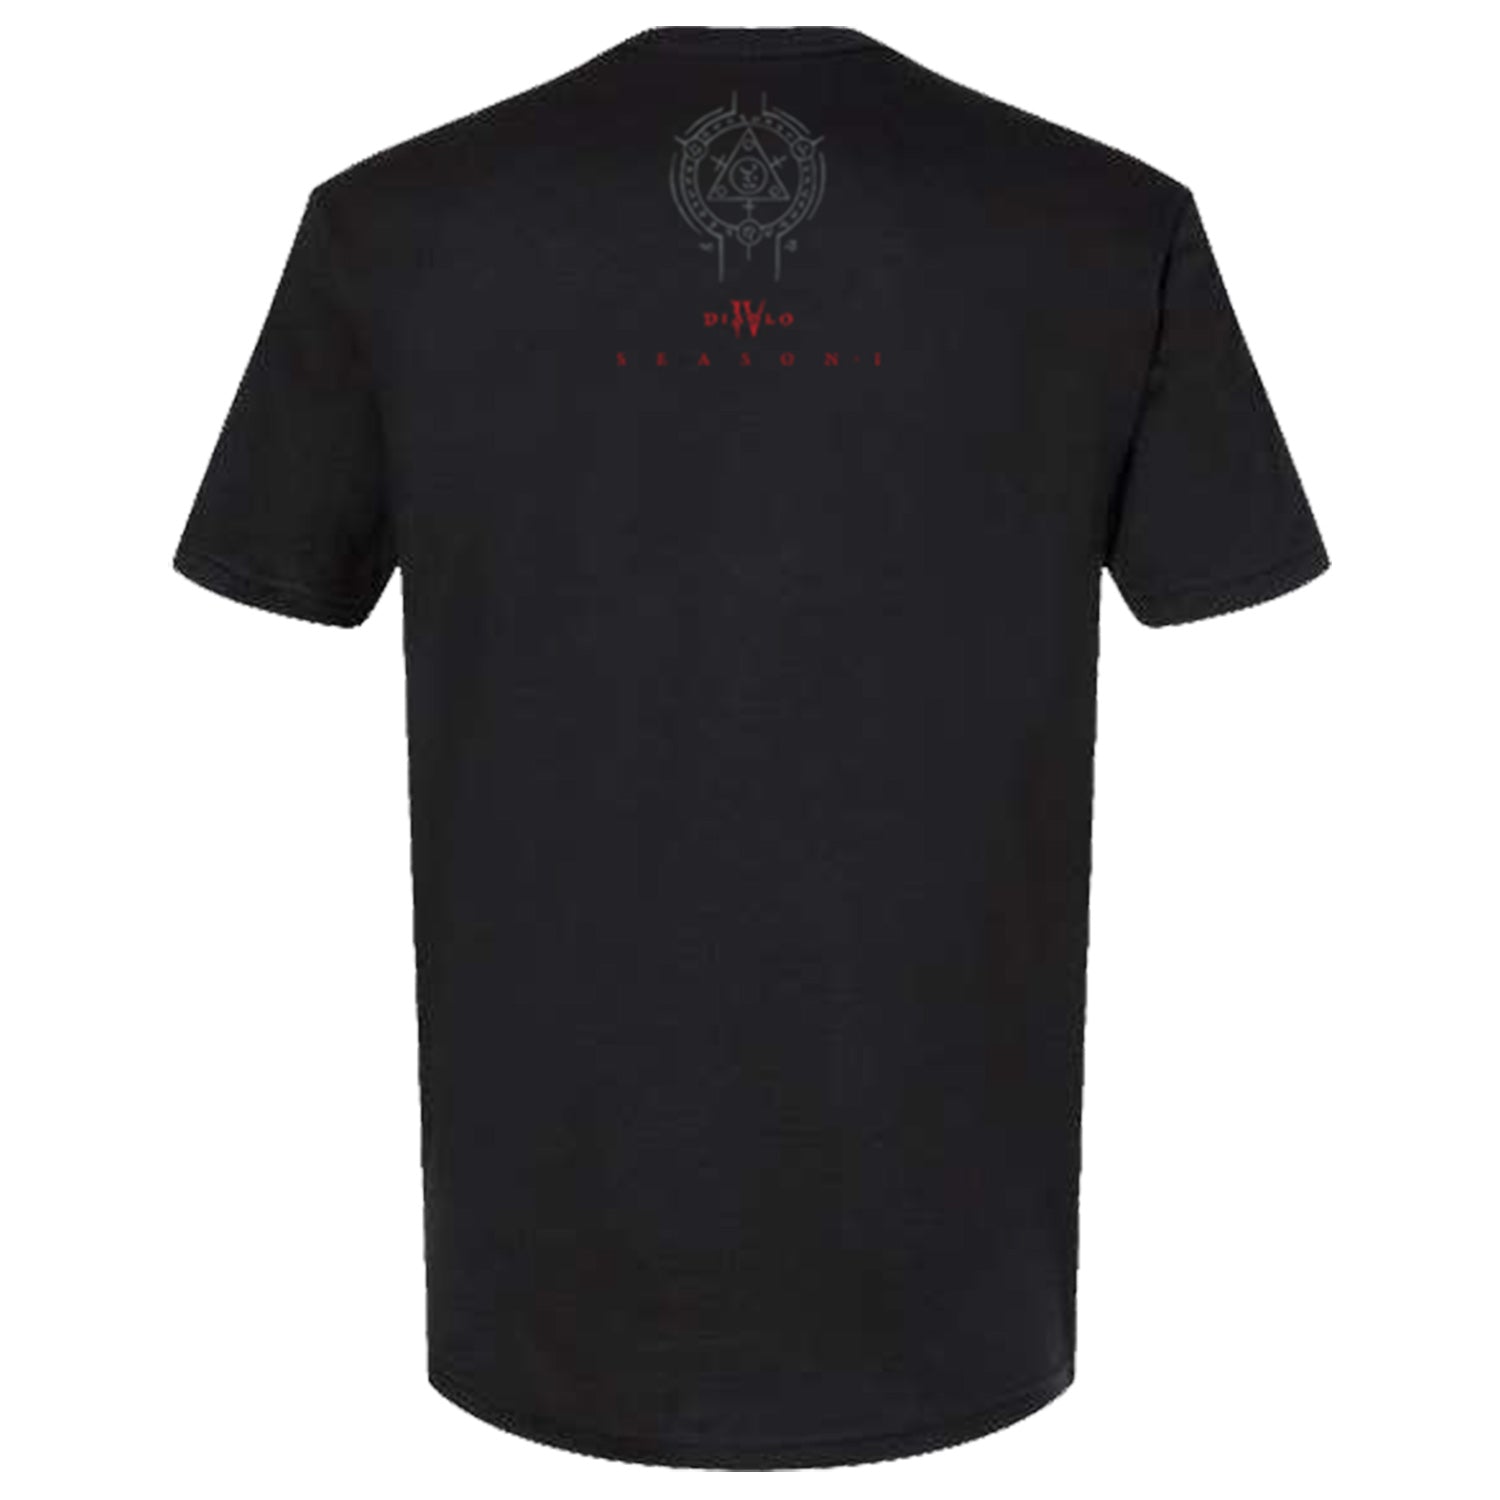 Diablo IV Season 1 Black T-Shirt - Back View